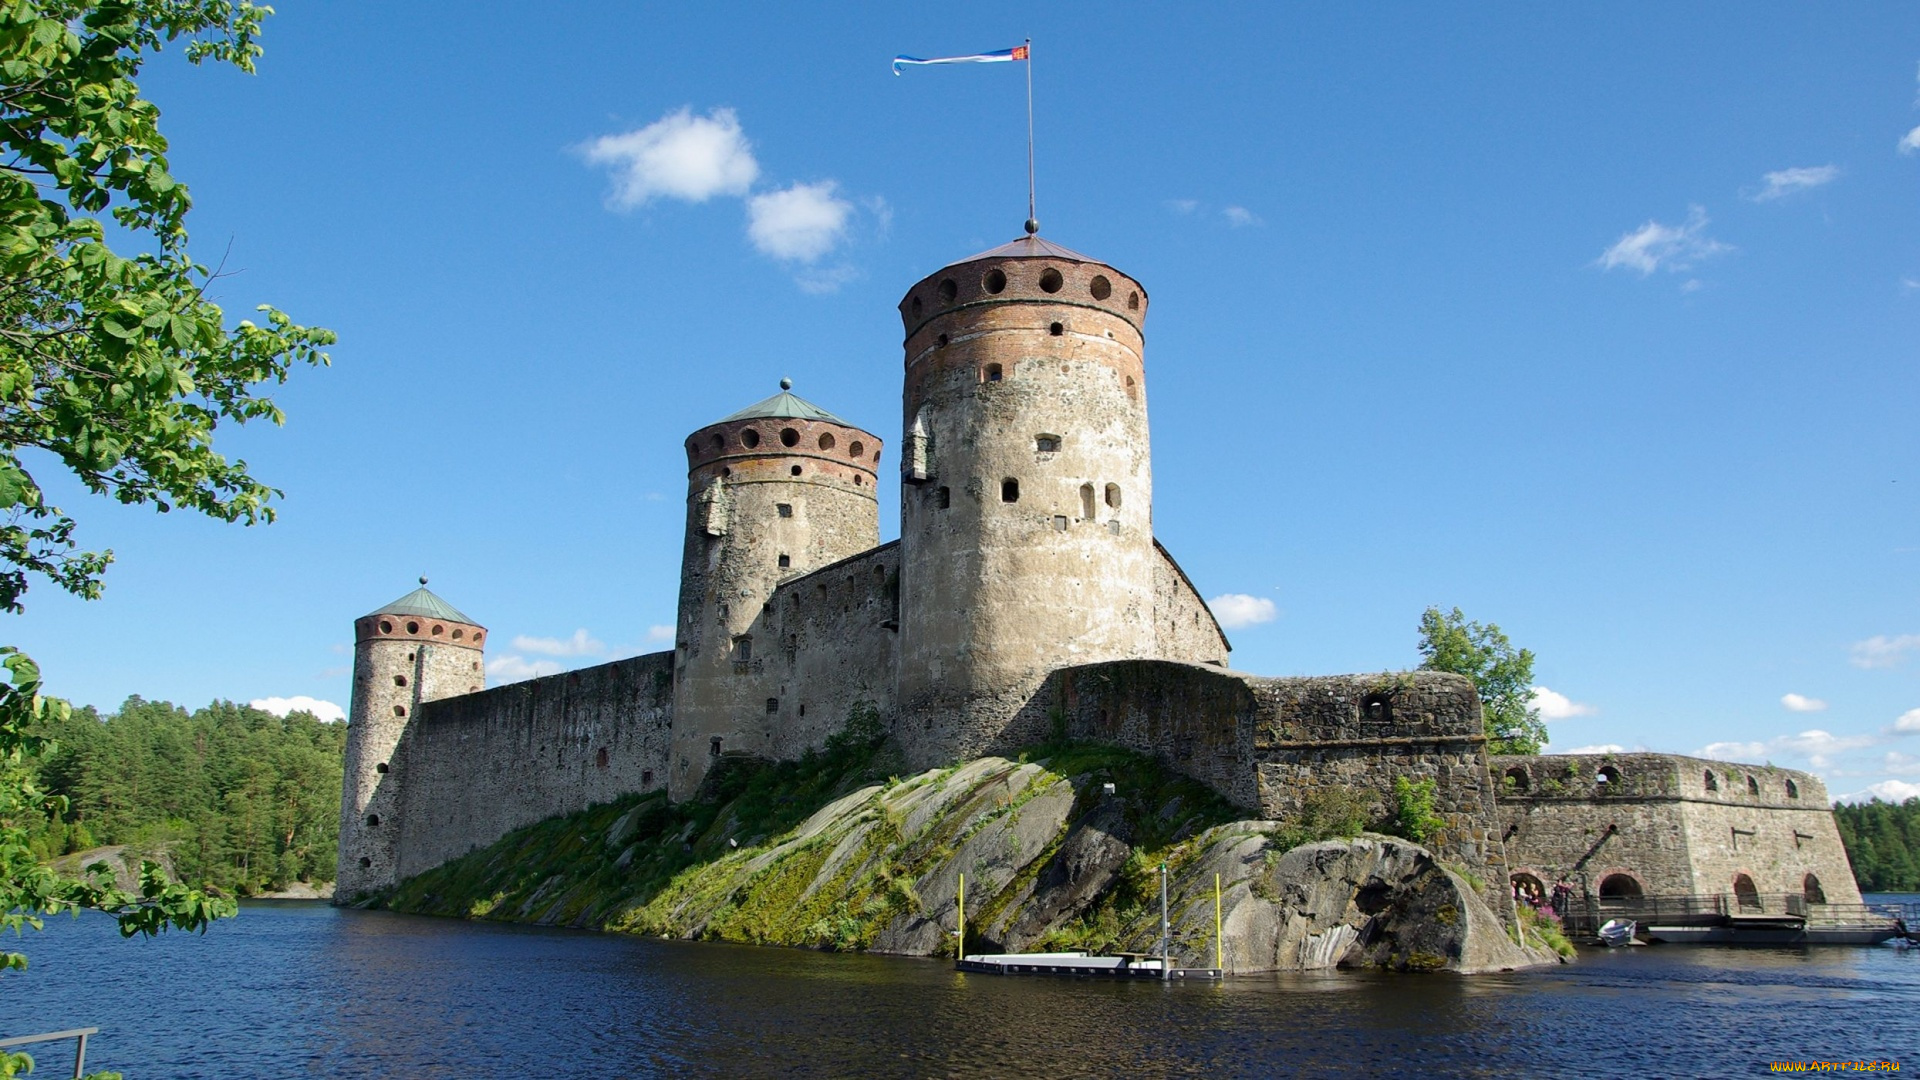 olavinlinna, castle, savonlinna, finland, города, -, дворцы, , замки, , крепости, olavinlinna, castle